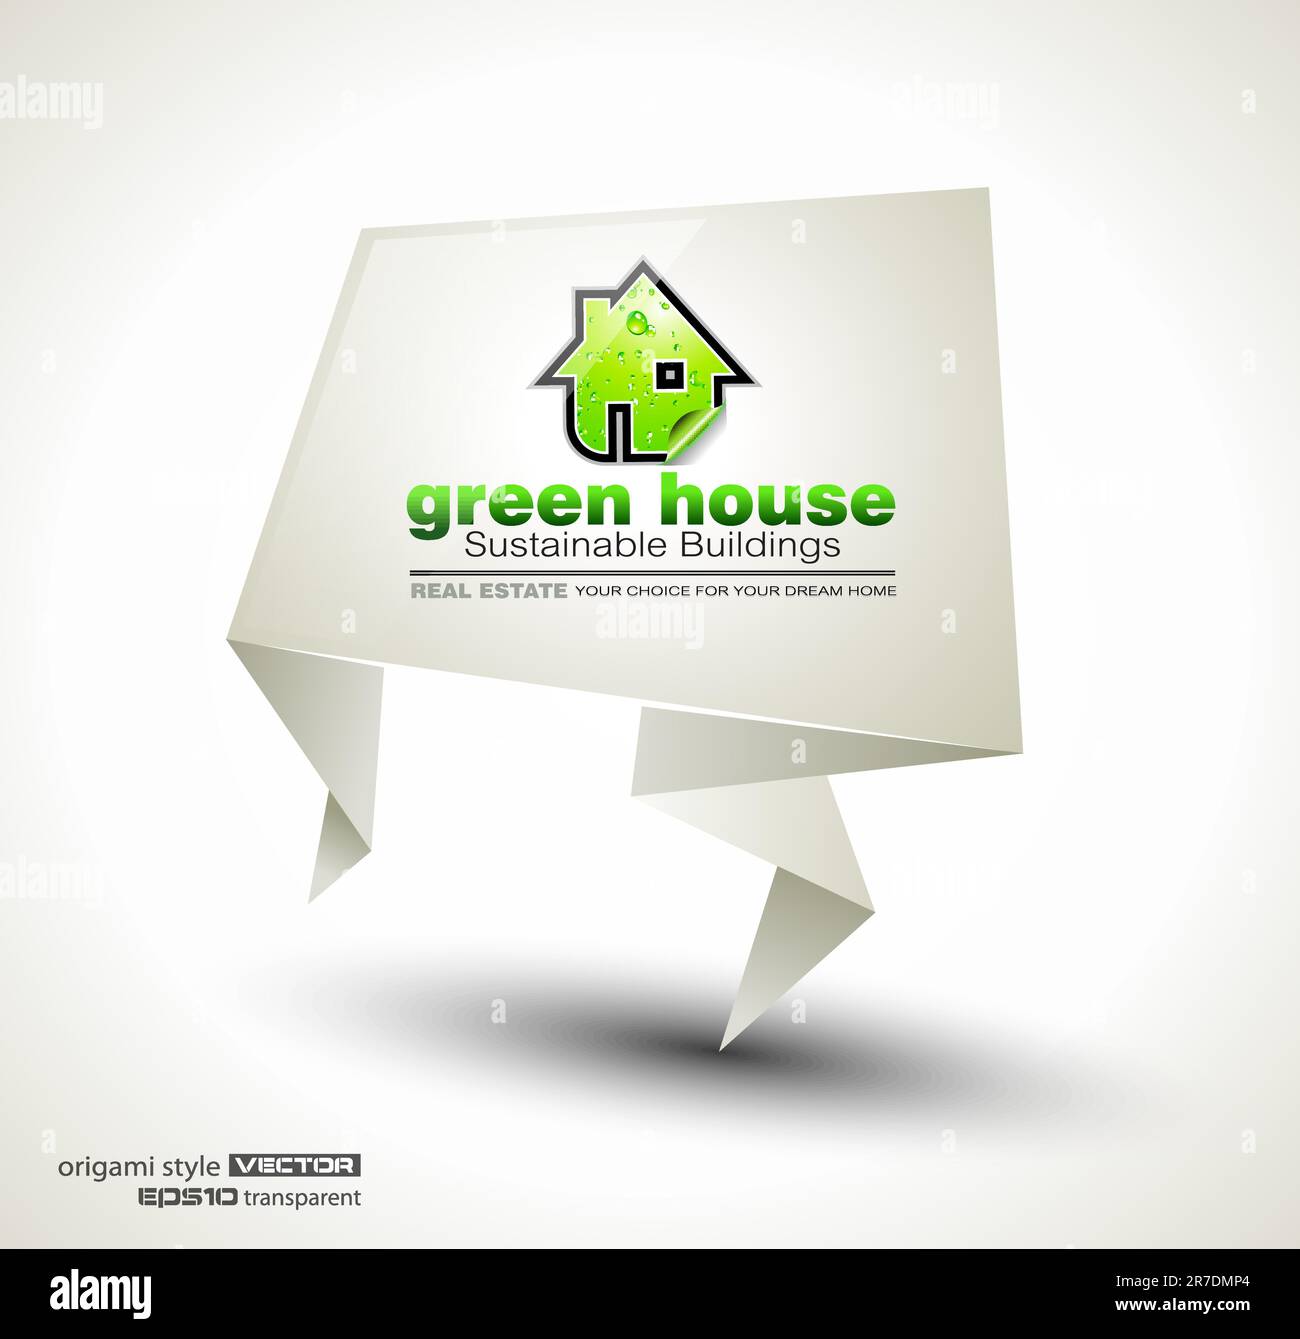 Green Real Estate abstrait origami papier stand ofr la publicité des maisons bio disponibles ou des bâtiments écologiques à vendre. L'ombre est transparente. Illustration de Vecteur